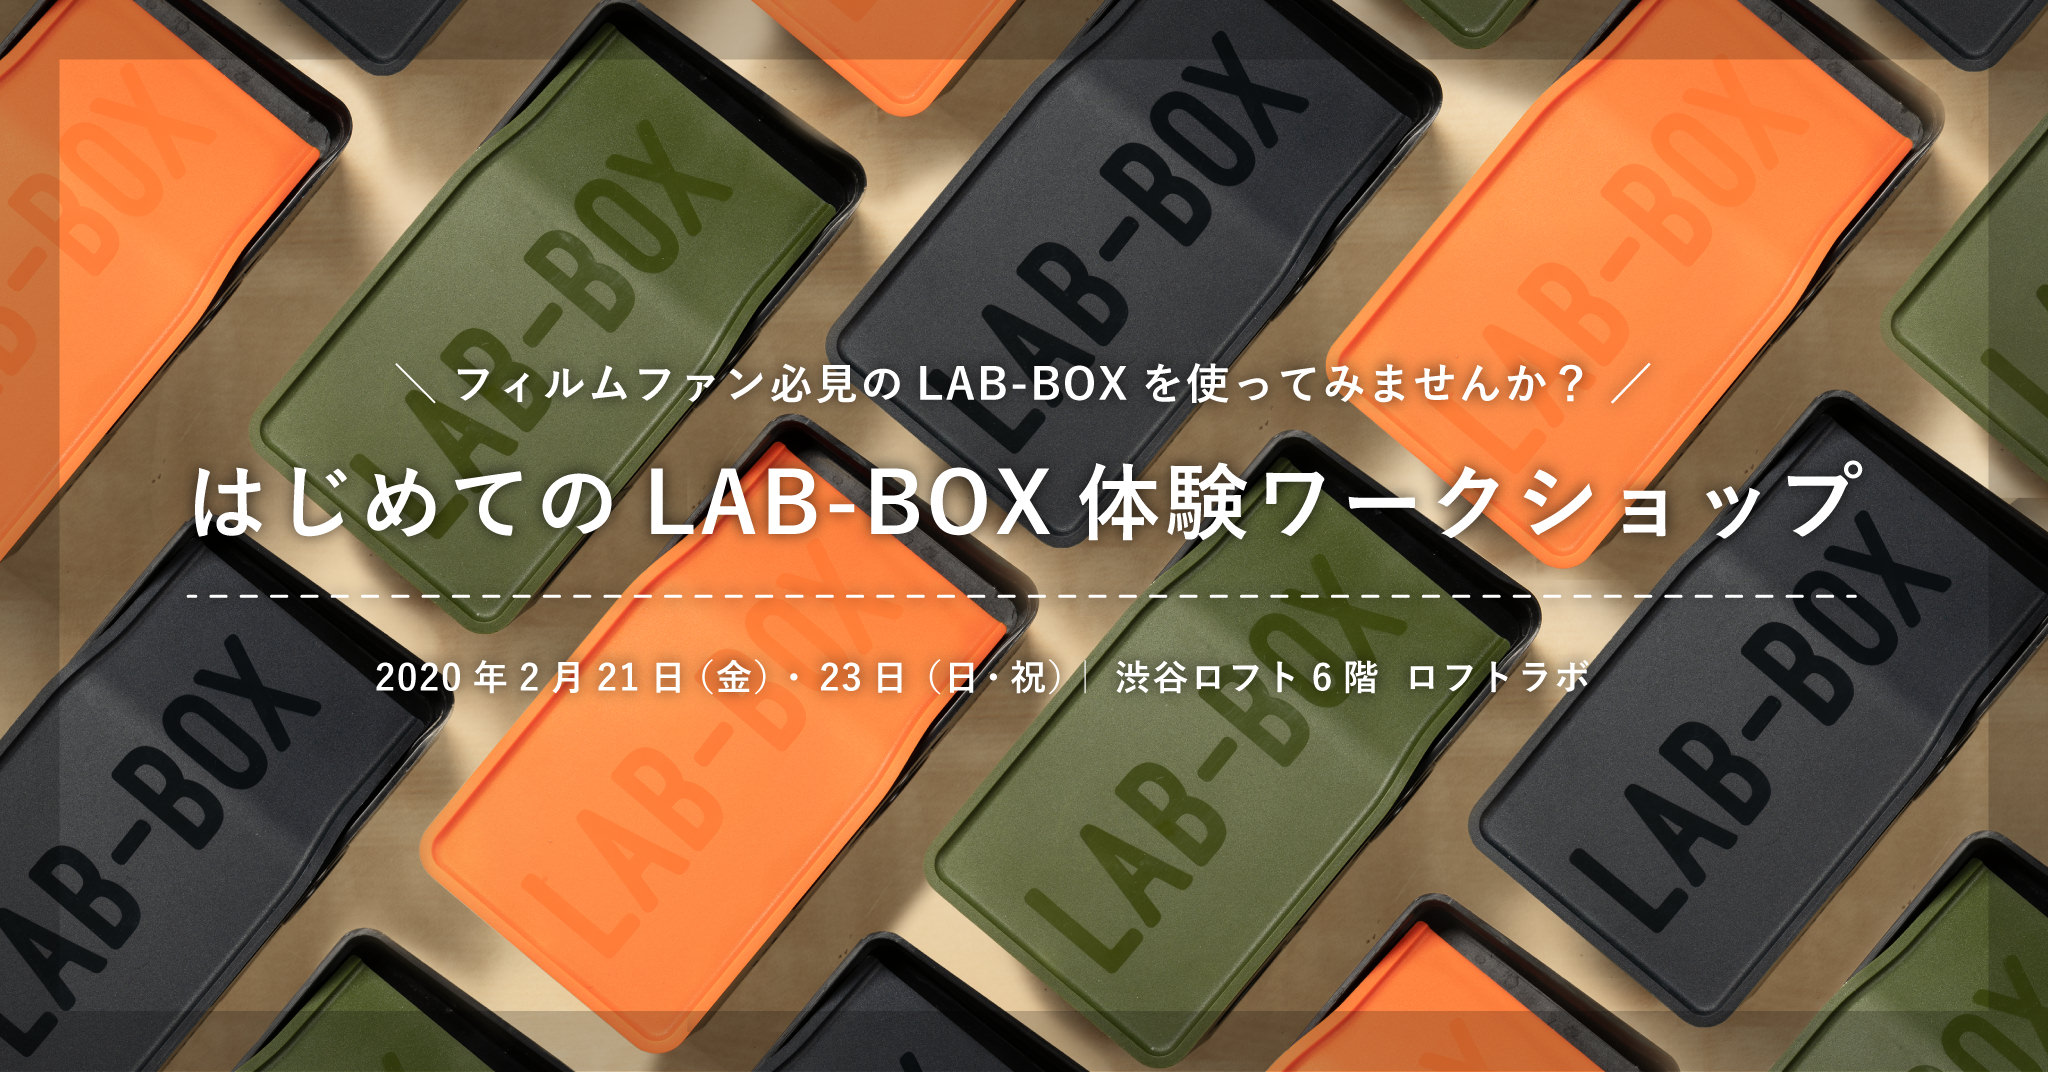 はじめてのLAB-BOX体験ワークショップ